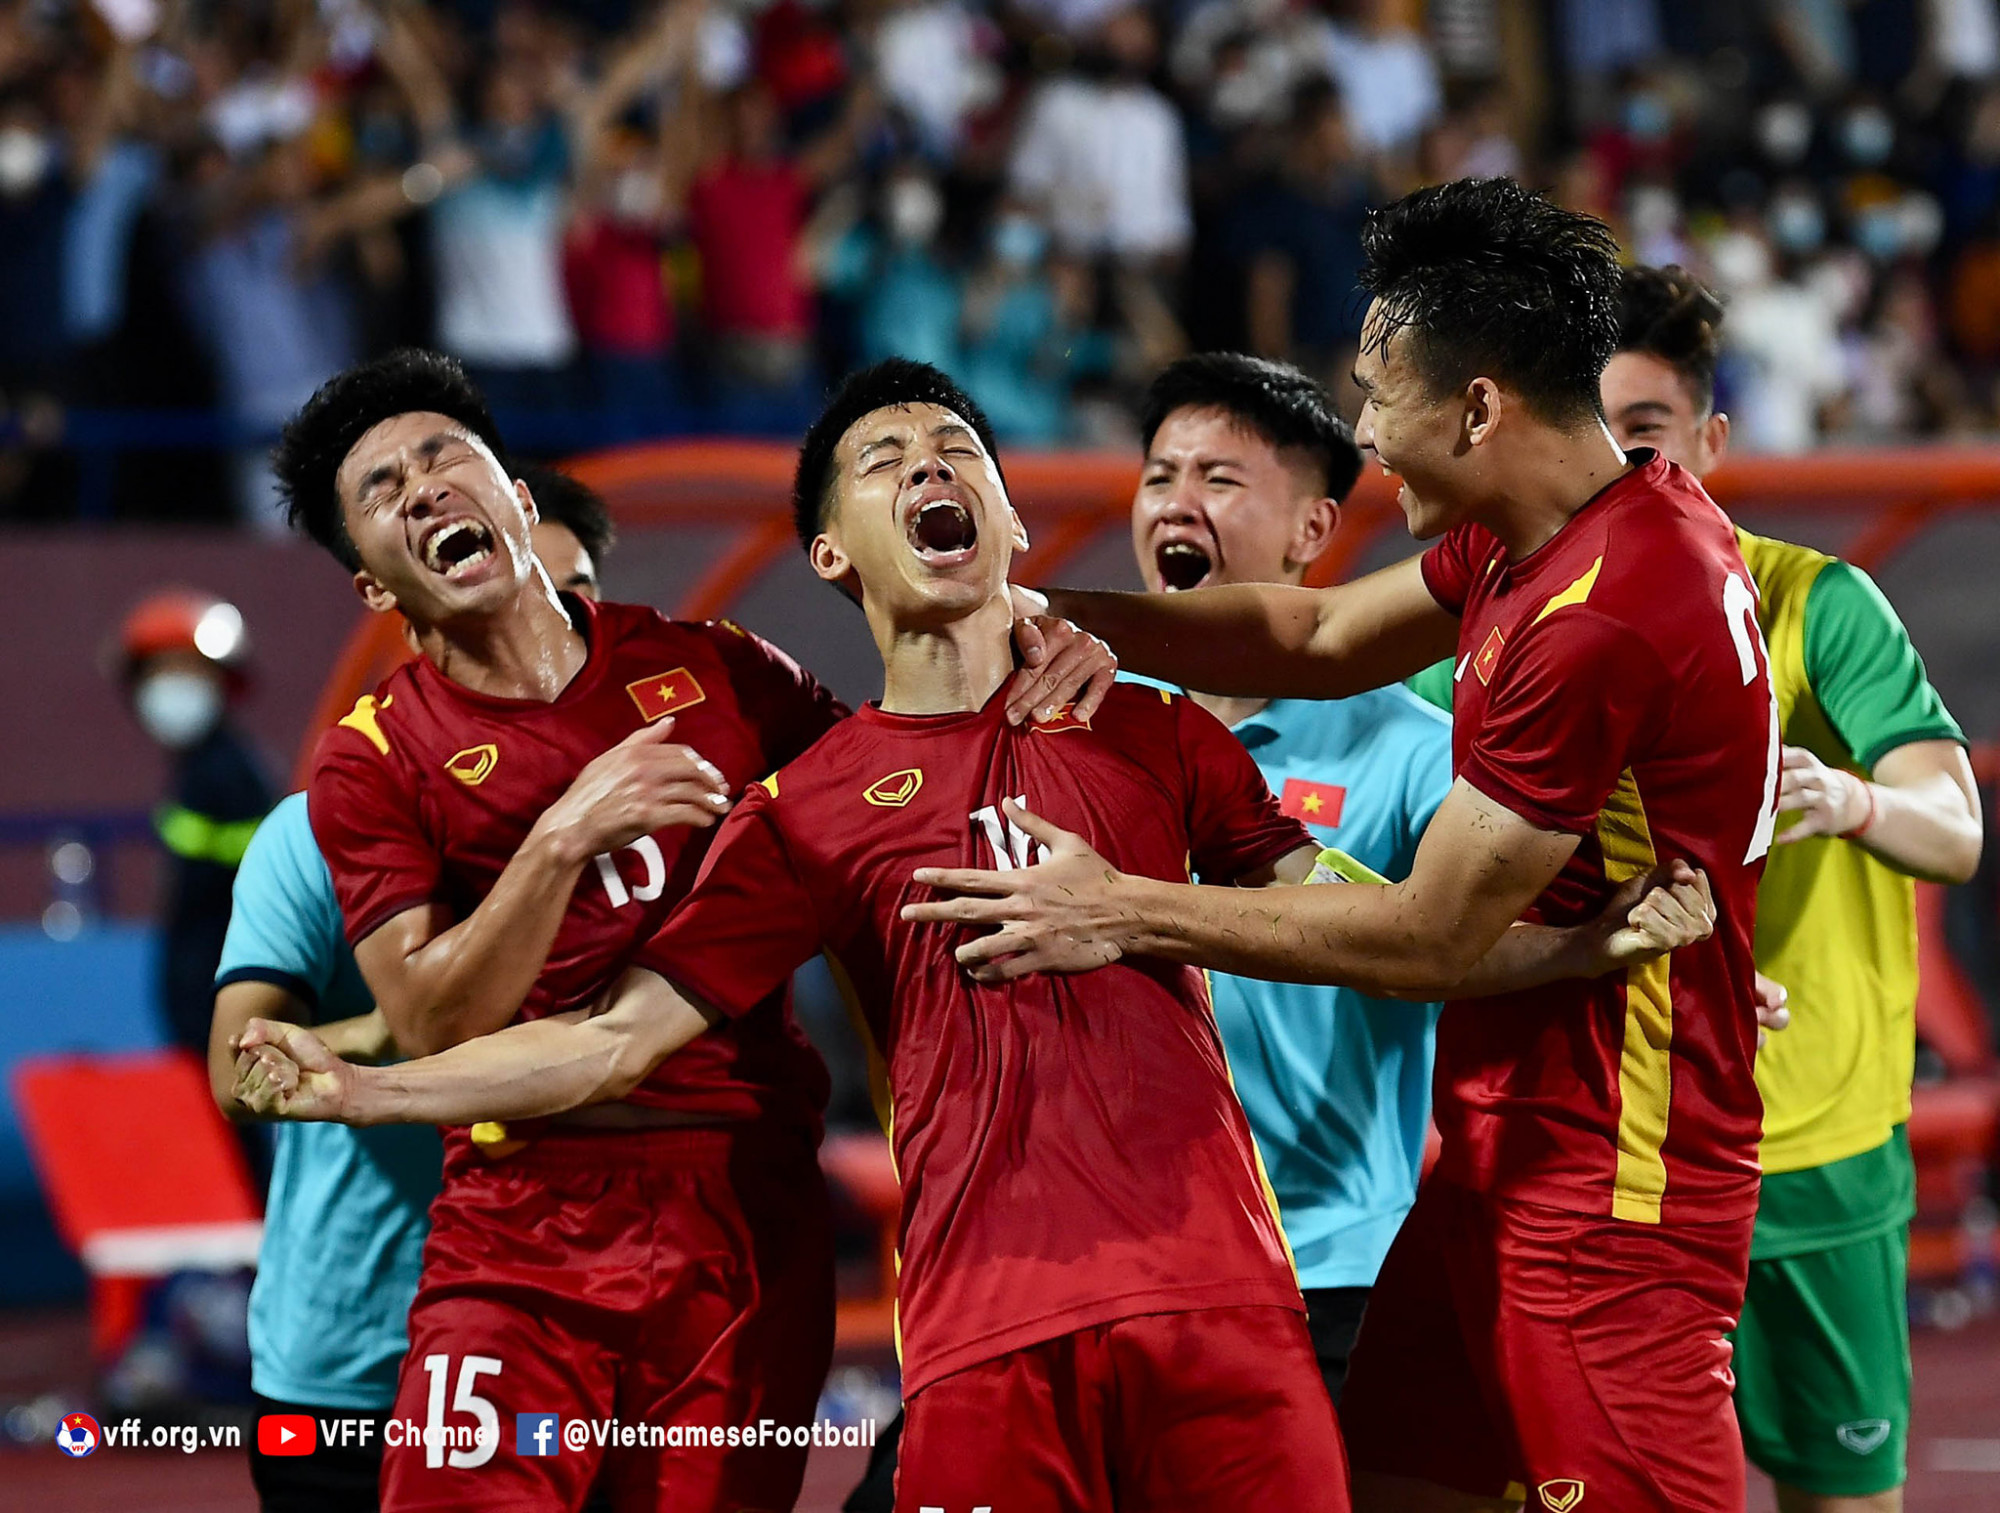 Bàn thắng của Đỗ Hùng Dũng giúp U23 Việt Nam giải tỏa thế bế tắc trước các cầu thủ U23 Myanmar - Ảnh: VFF